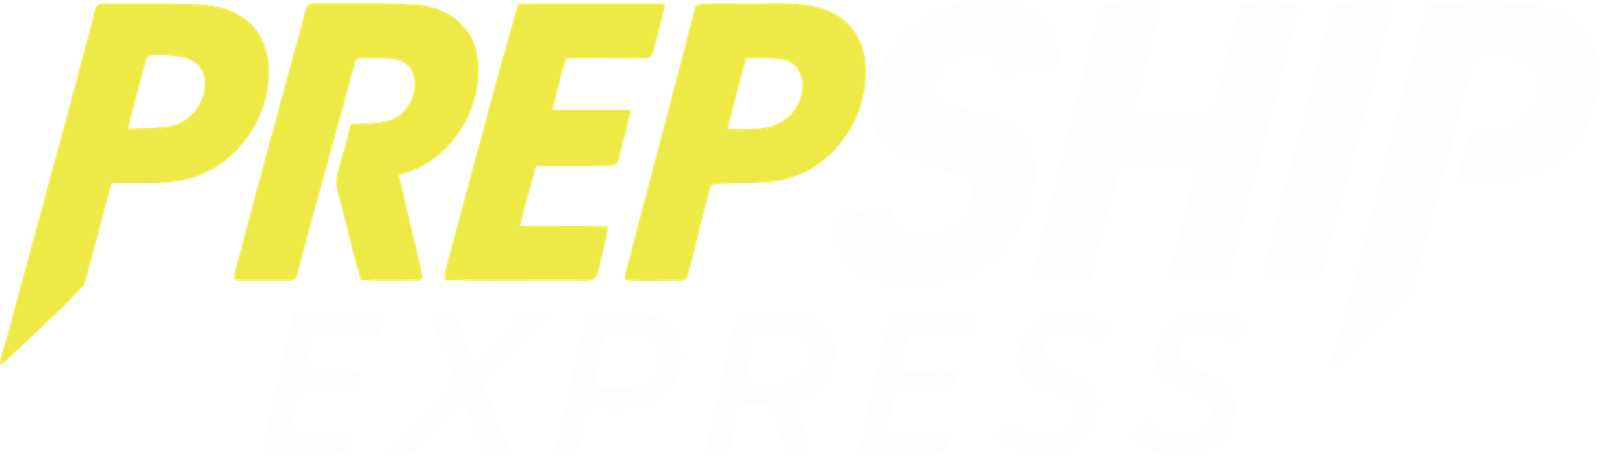 PrepshipExpress 